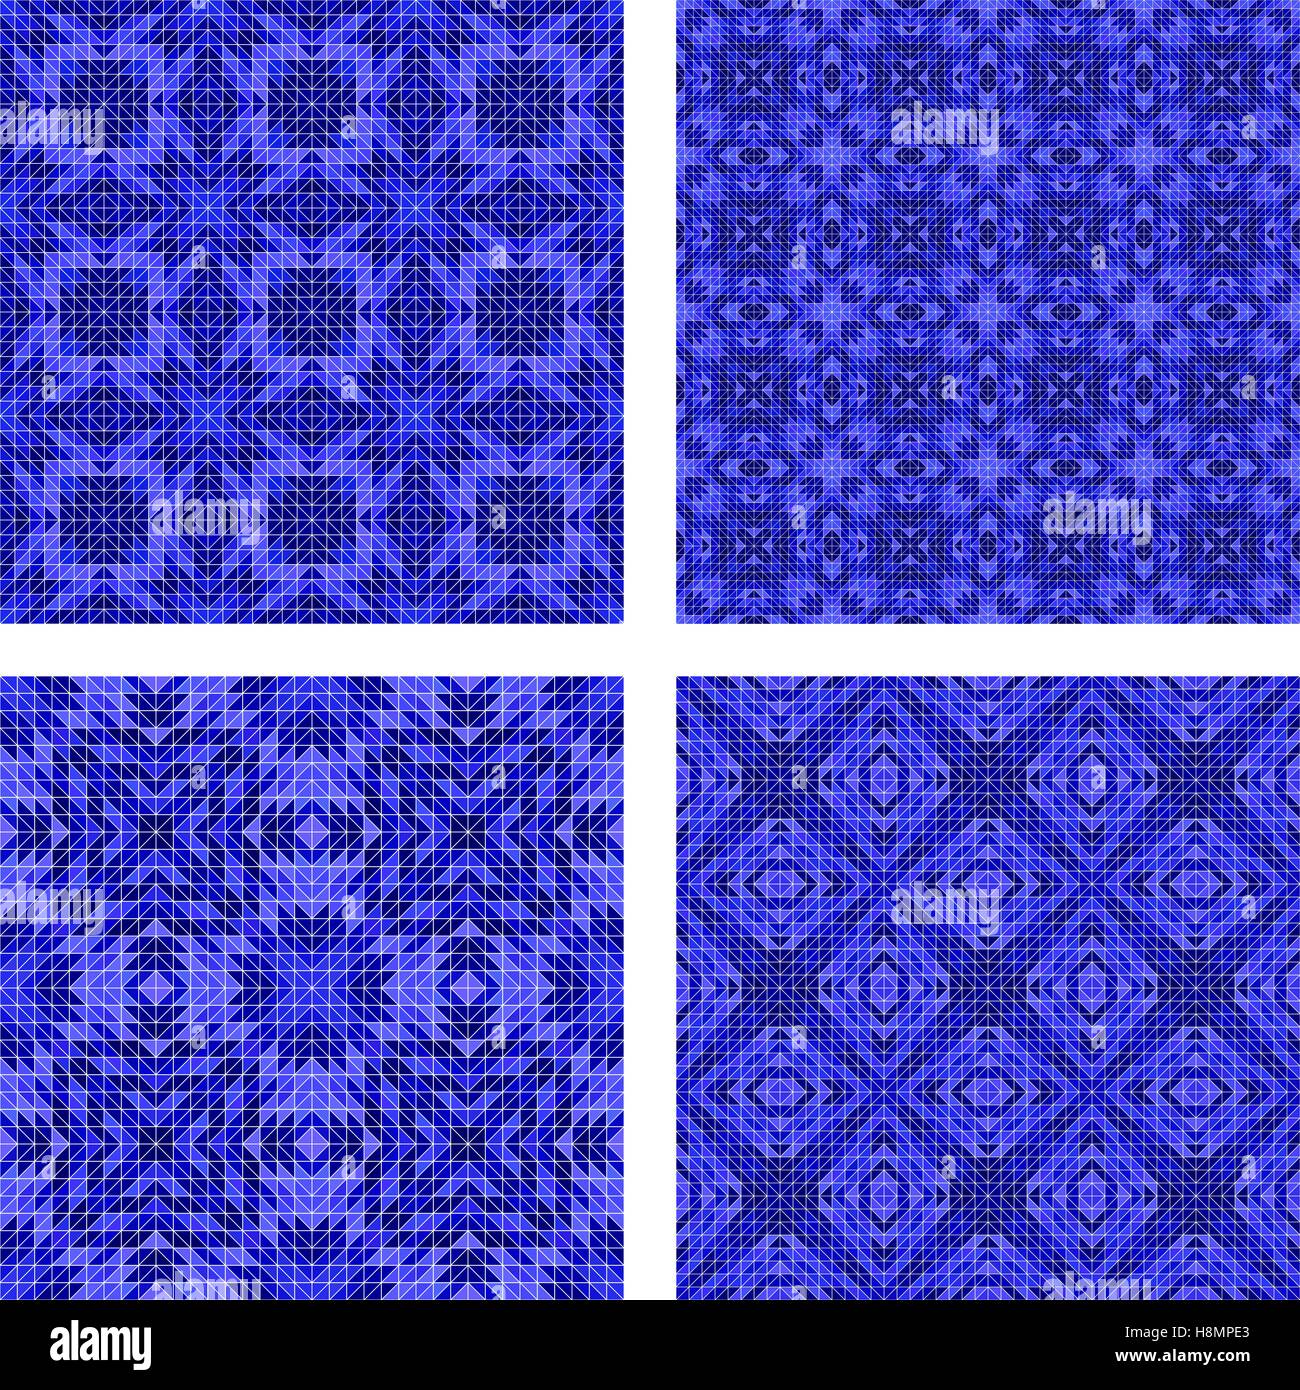 Blaues Dreieck Mosaik Kaleidoskop Formularsatz Stock Vektor